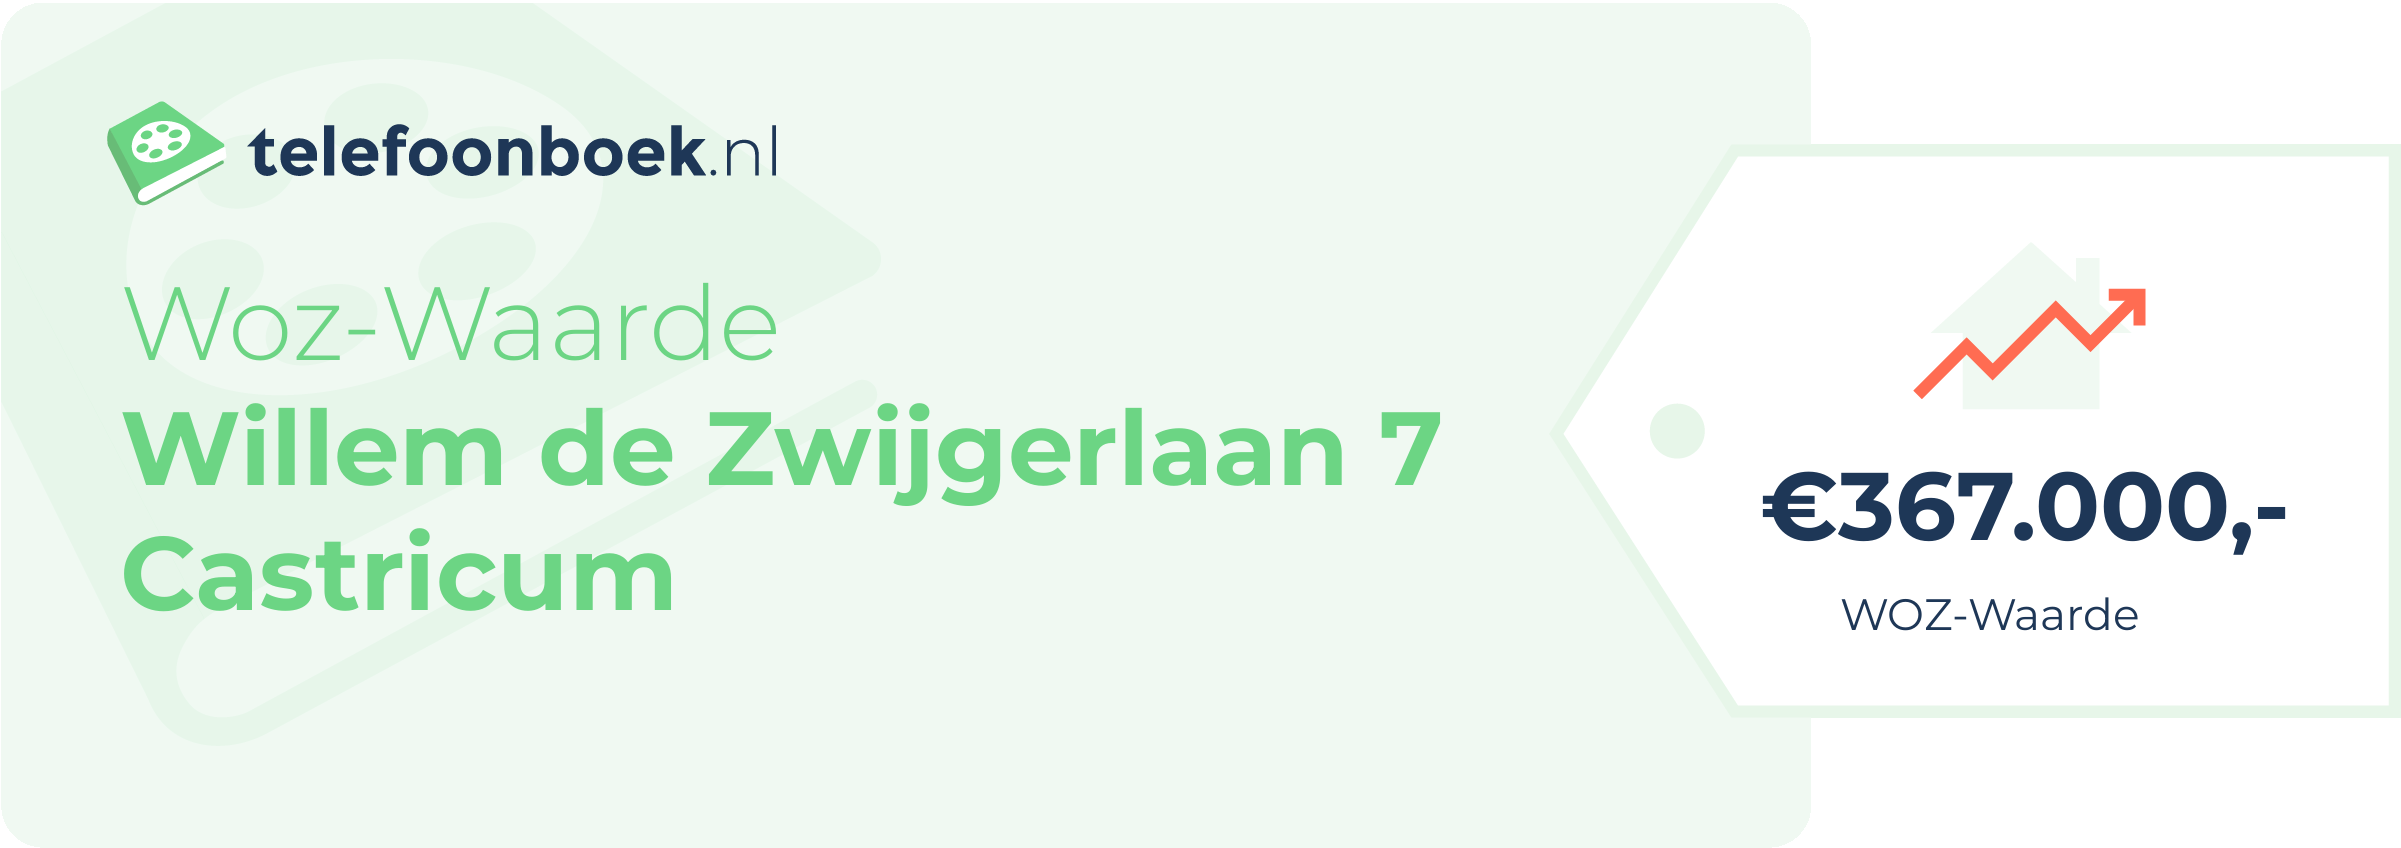 WOZ-waarde Willem De Zwijgerlaan 7 Castricum